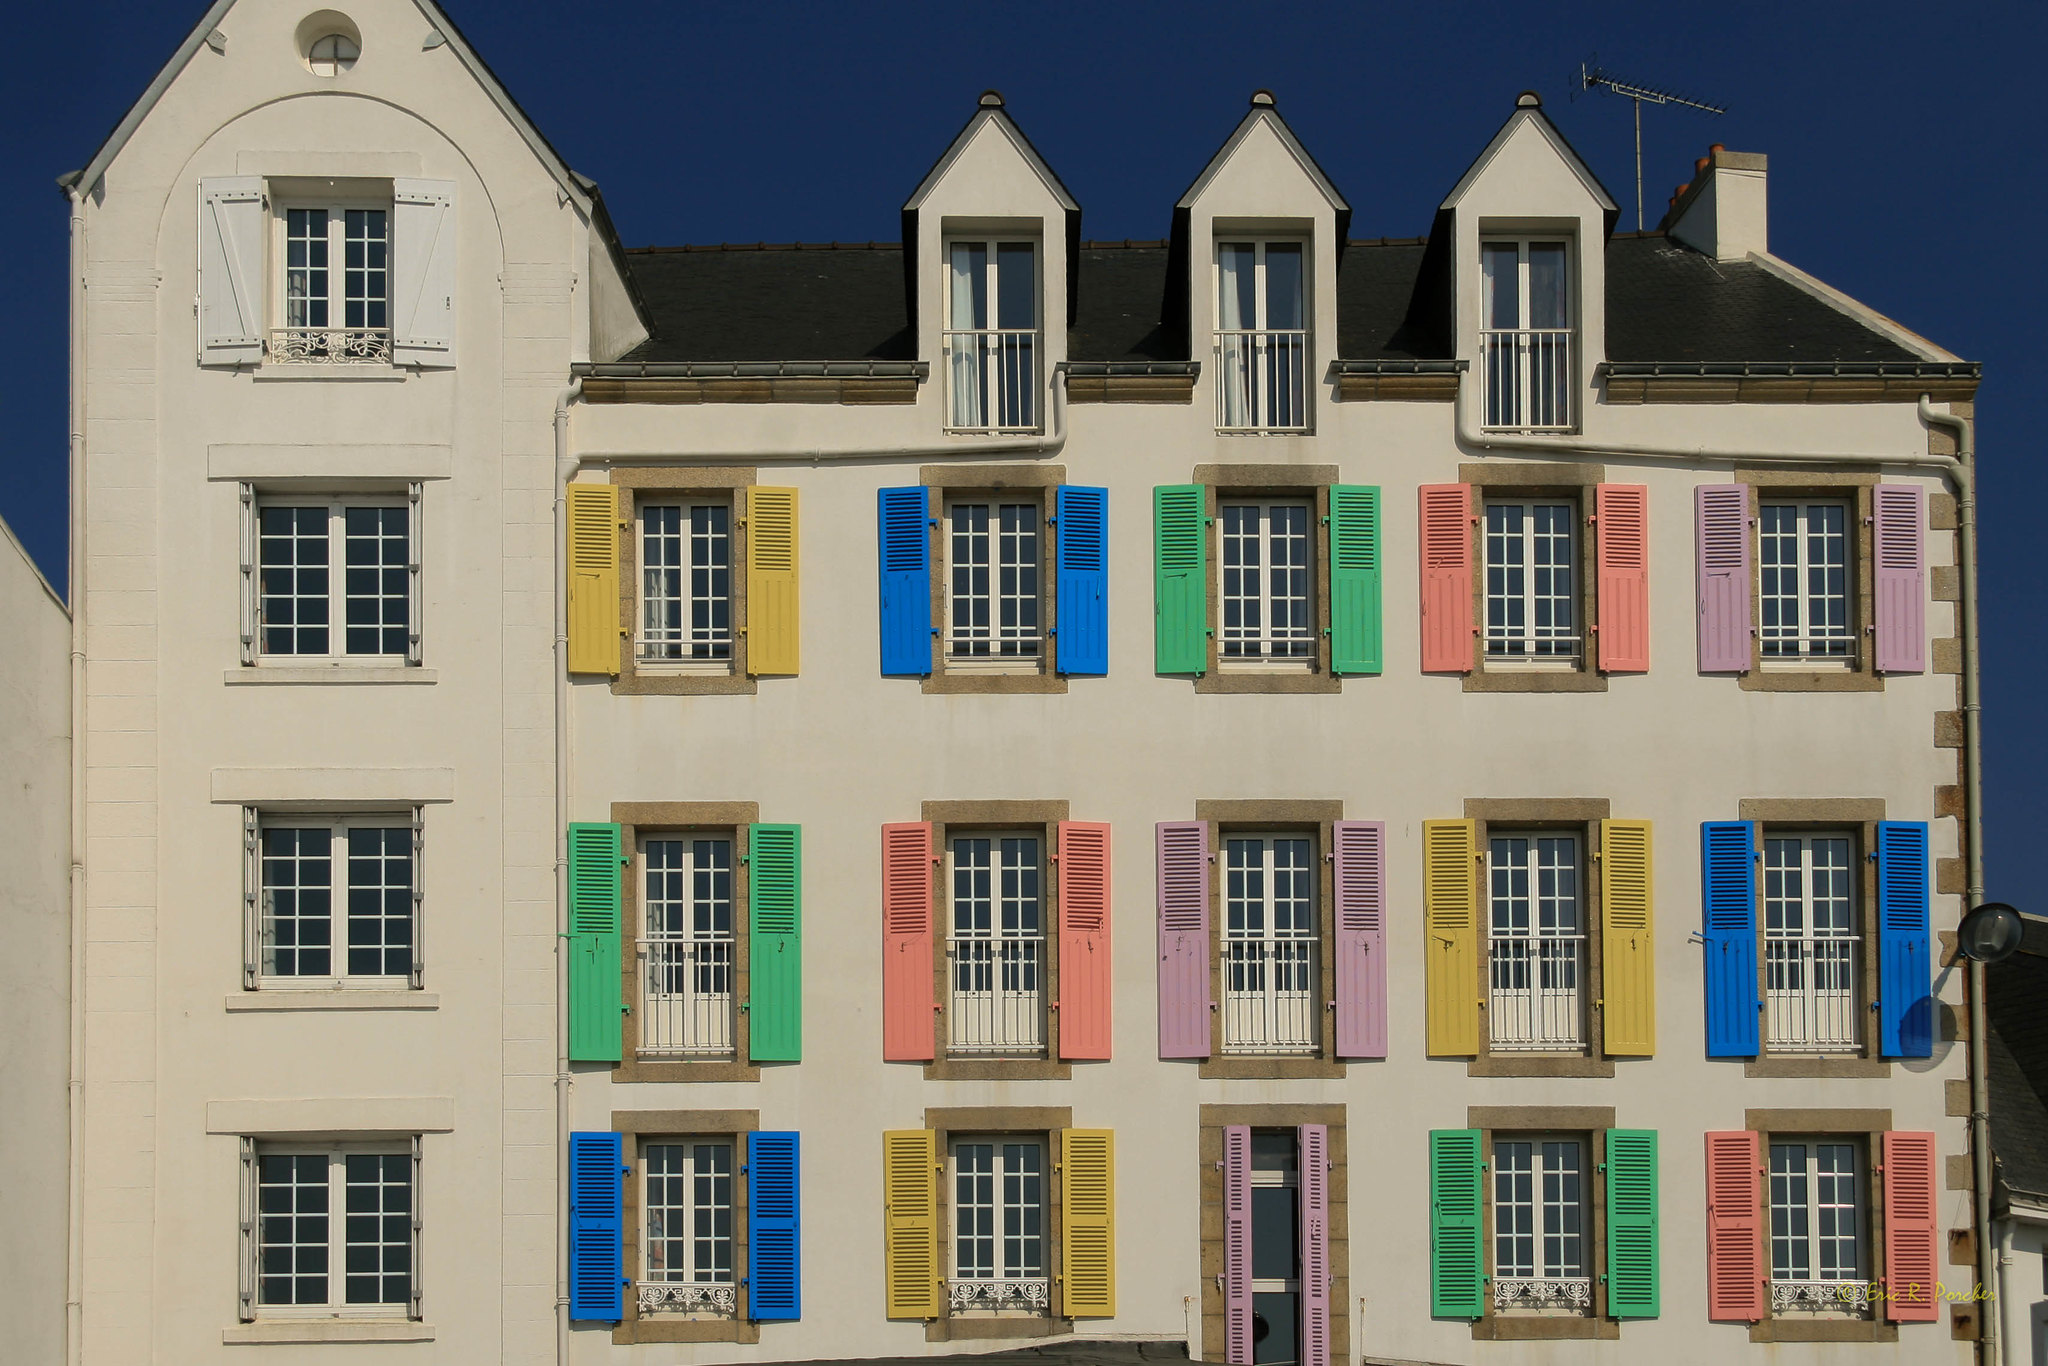 Se é difícil sintetizar em uma imagem a diversidade cultural que a arquitetura manifesta, as cores simbolizam com maestria essa qualidade intrínseca do mundo da construção (Foto: Eric R. Porcher)